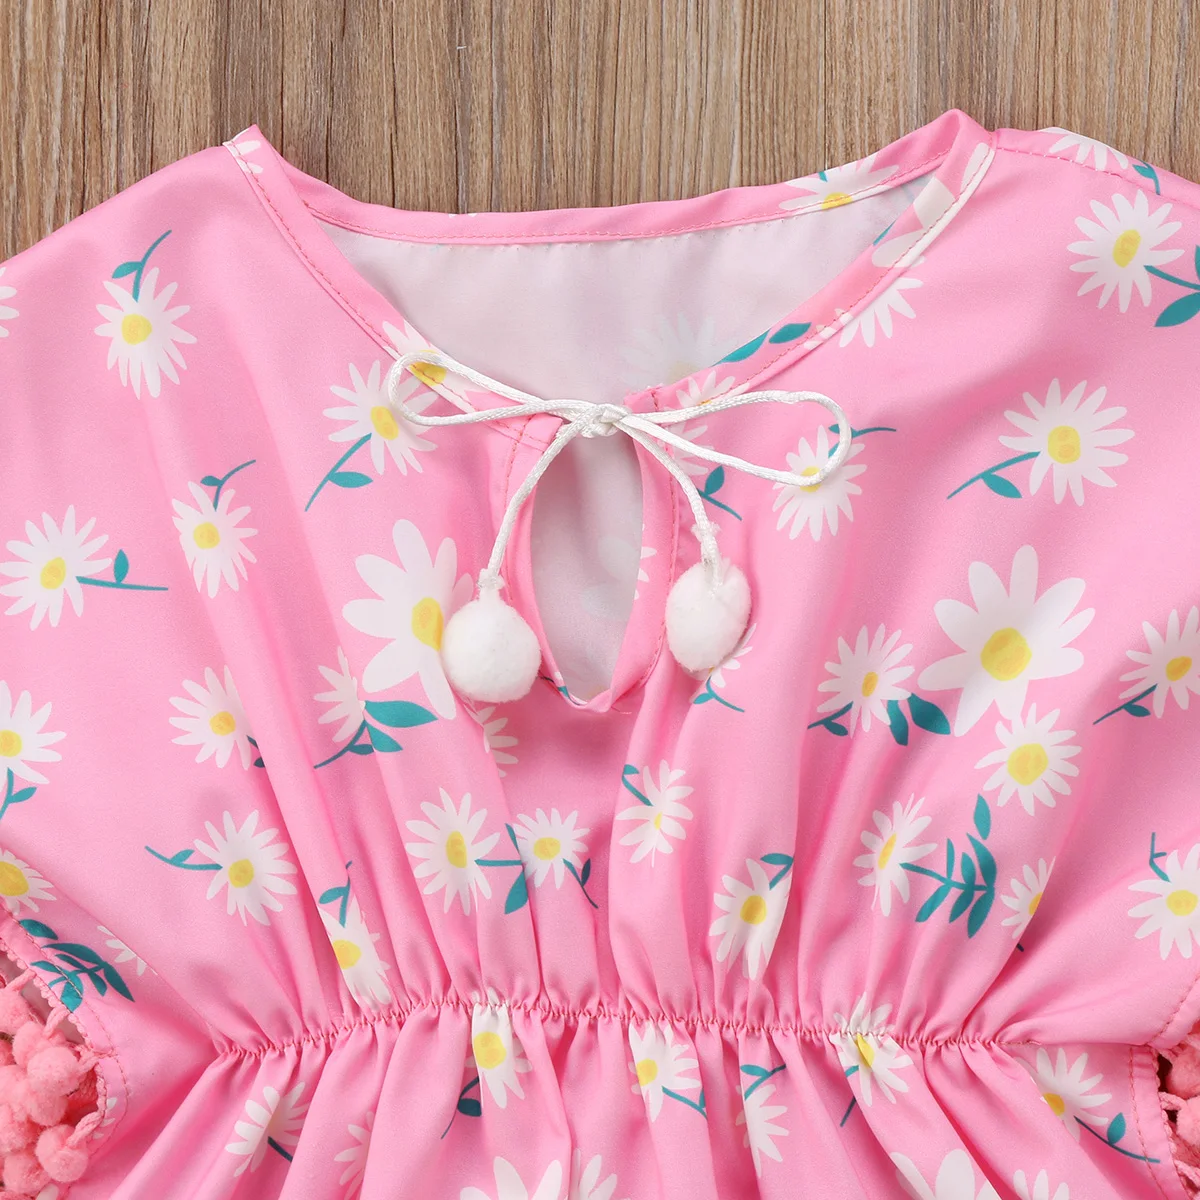 Милое детское пляжное платье для маленьких девочек, купальный сарафан, бикини, накидка с цветами, купальный костюм, пляжная одежда, купальник